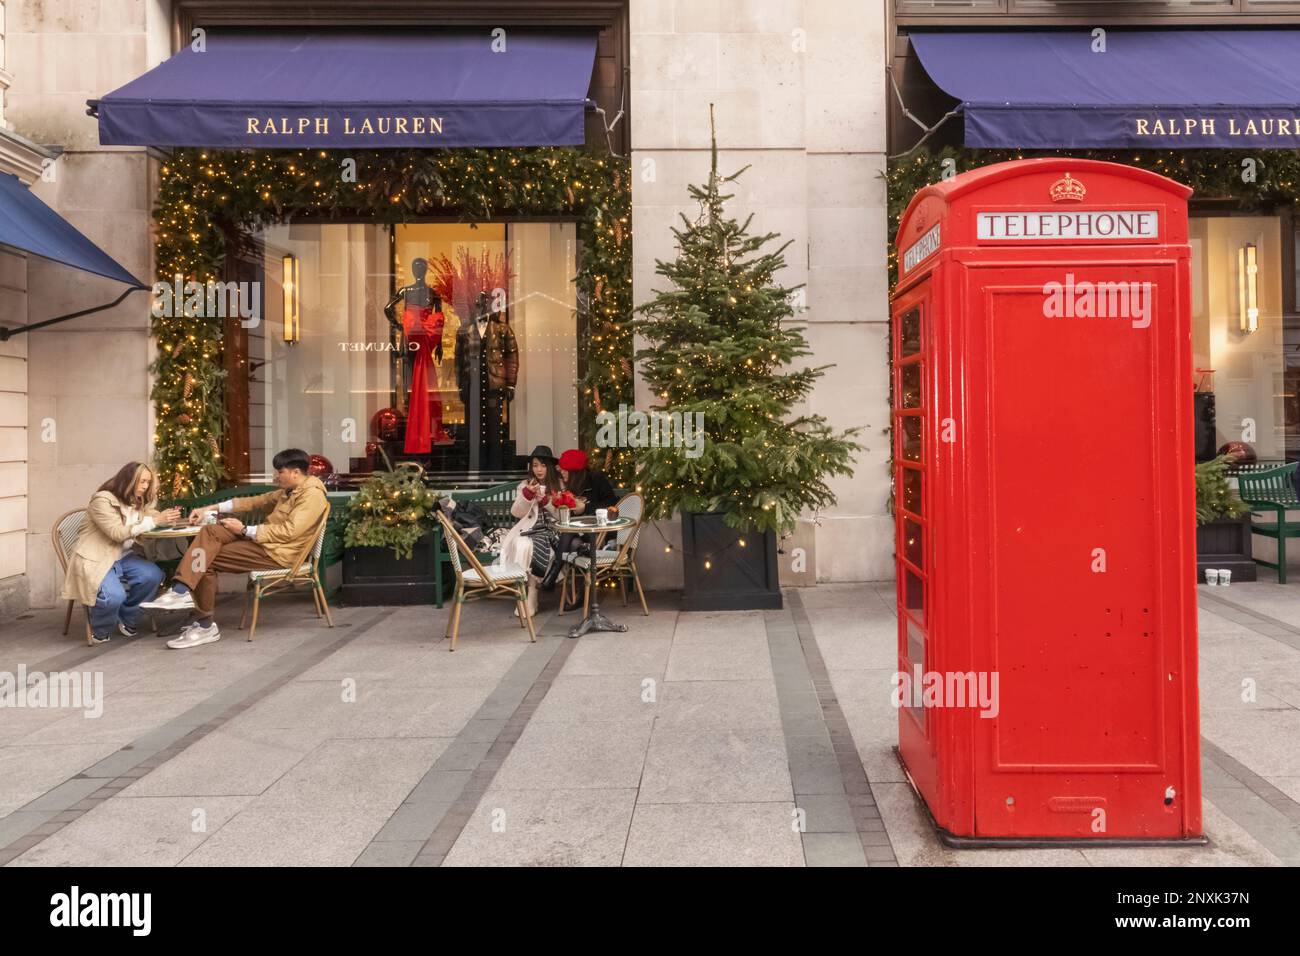 England, London, Piccadilly, New Bond Street, Außenansicht des Ralph Lauren Store mit Weihnachtsdekorationen und traditioneller roter Telefonzelle Stockfoto